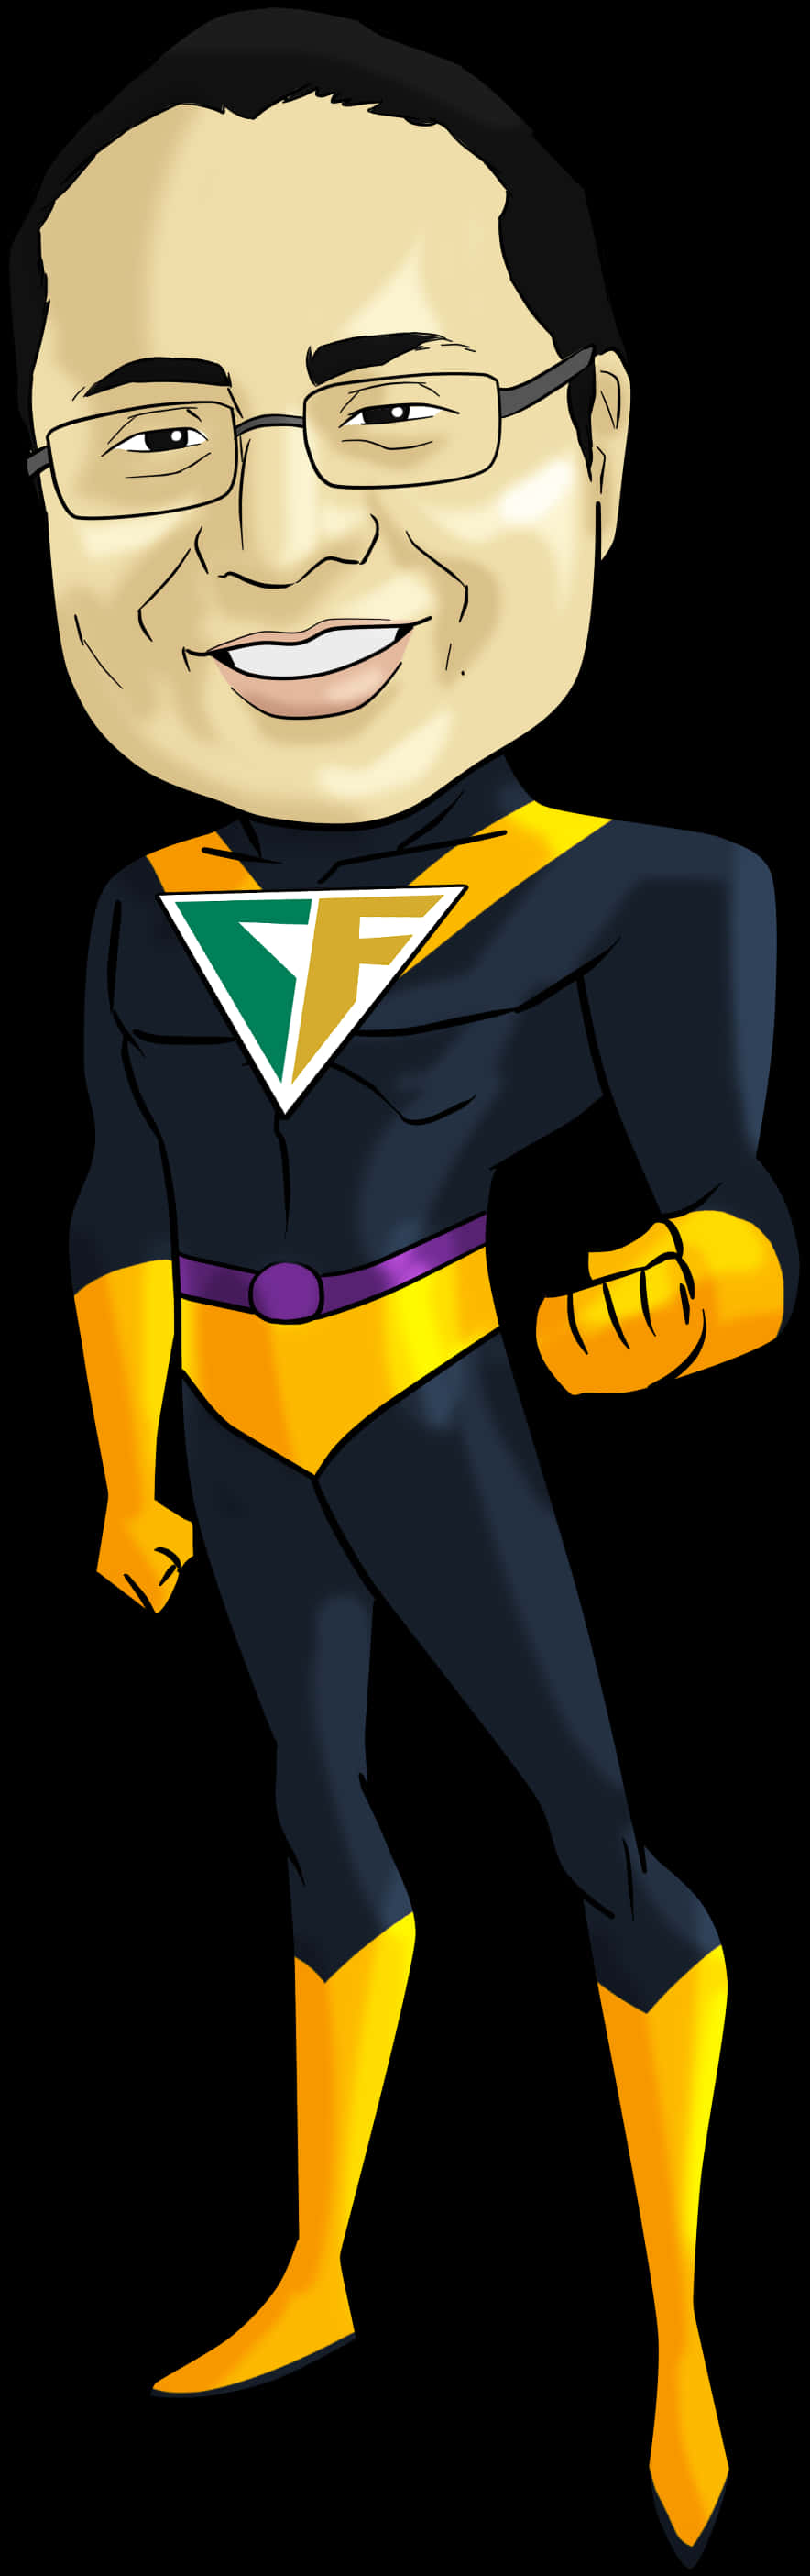 Superhero Caricature Manin Blackand Yellow Costume PNG